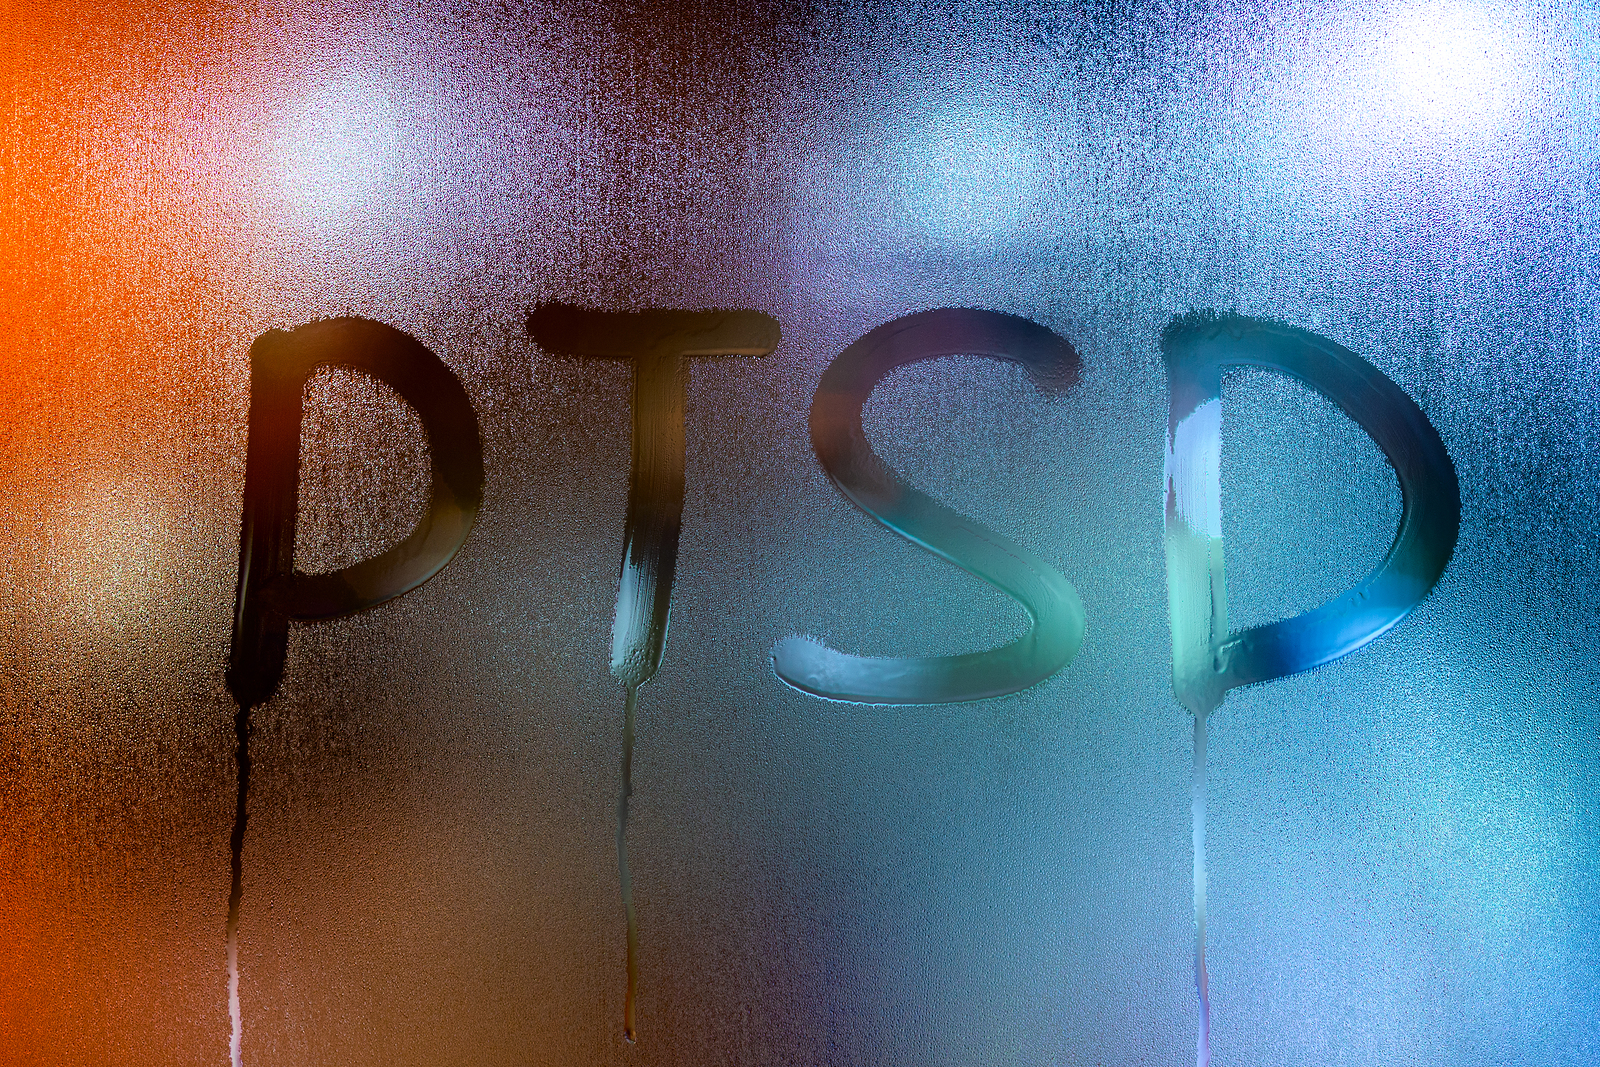 PTSD written in steam on a window